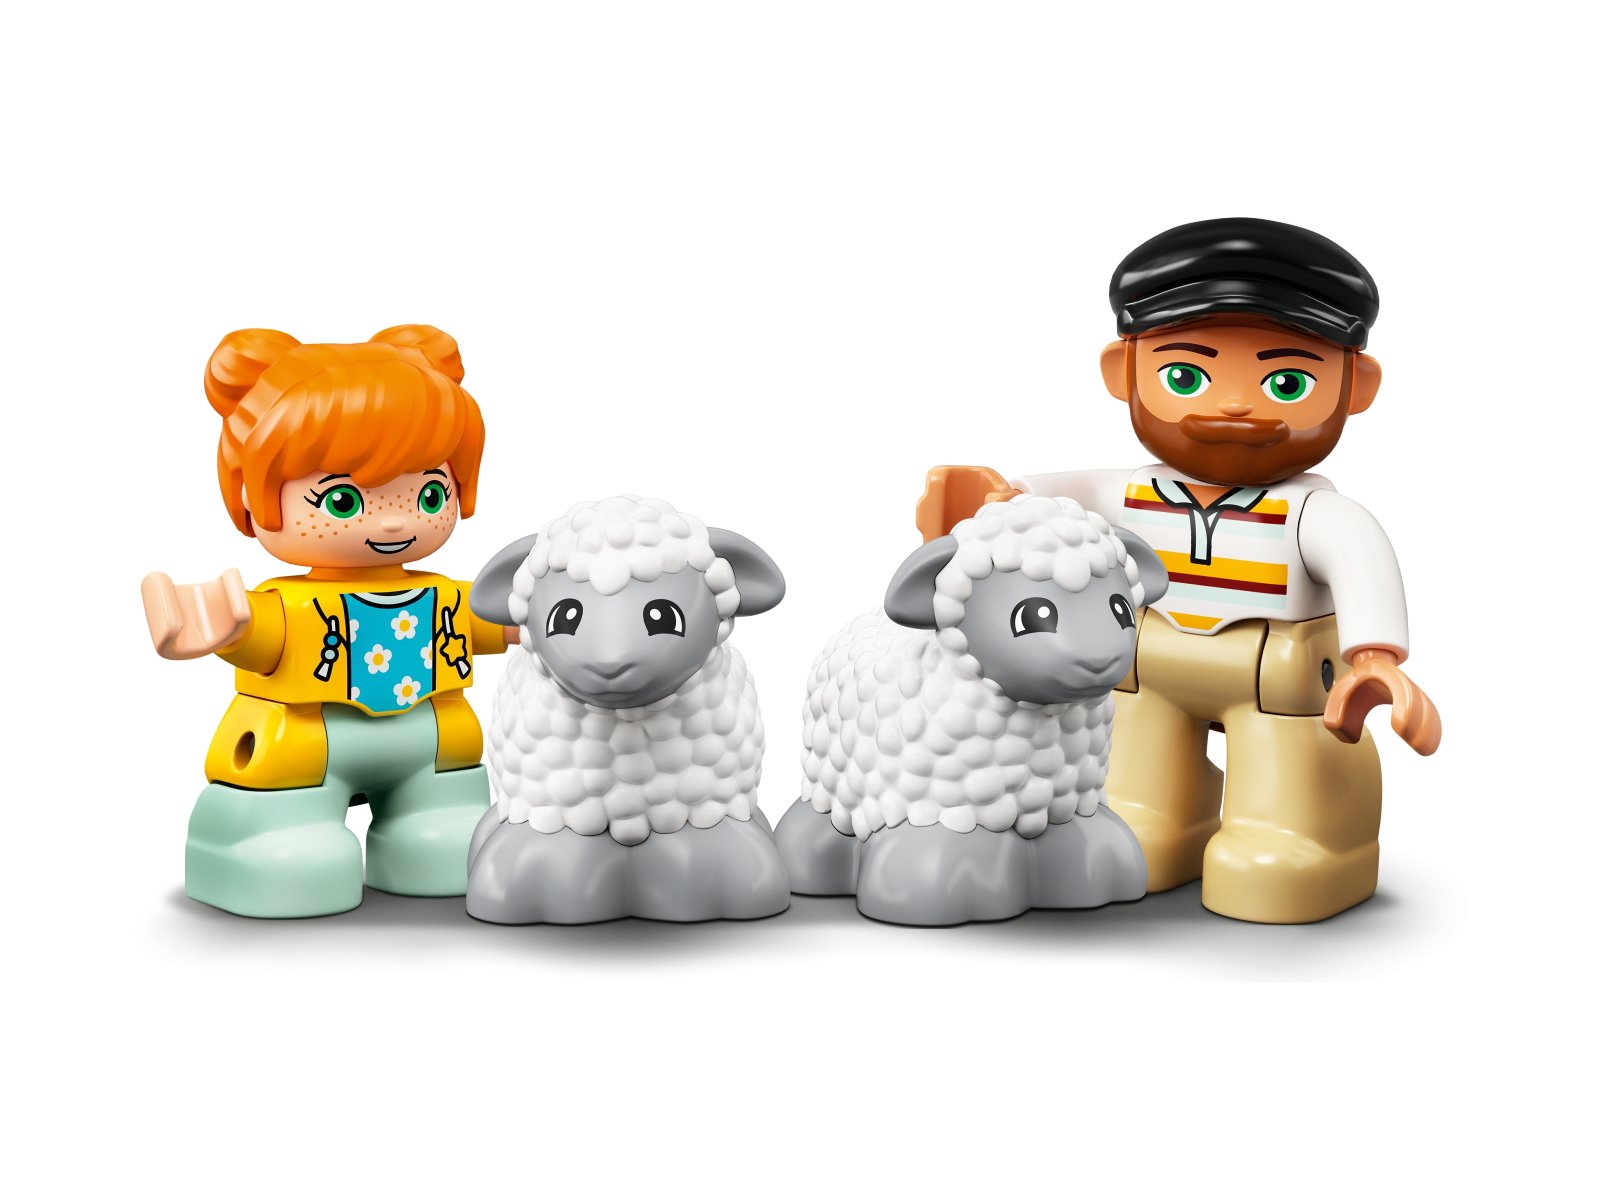 LEGO 10950 Traktor i zwierzęta gospodarskie